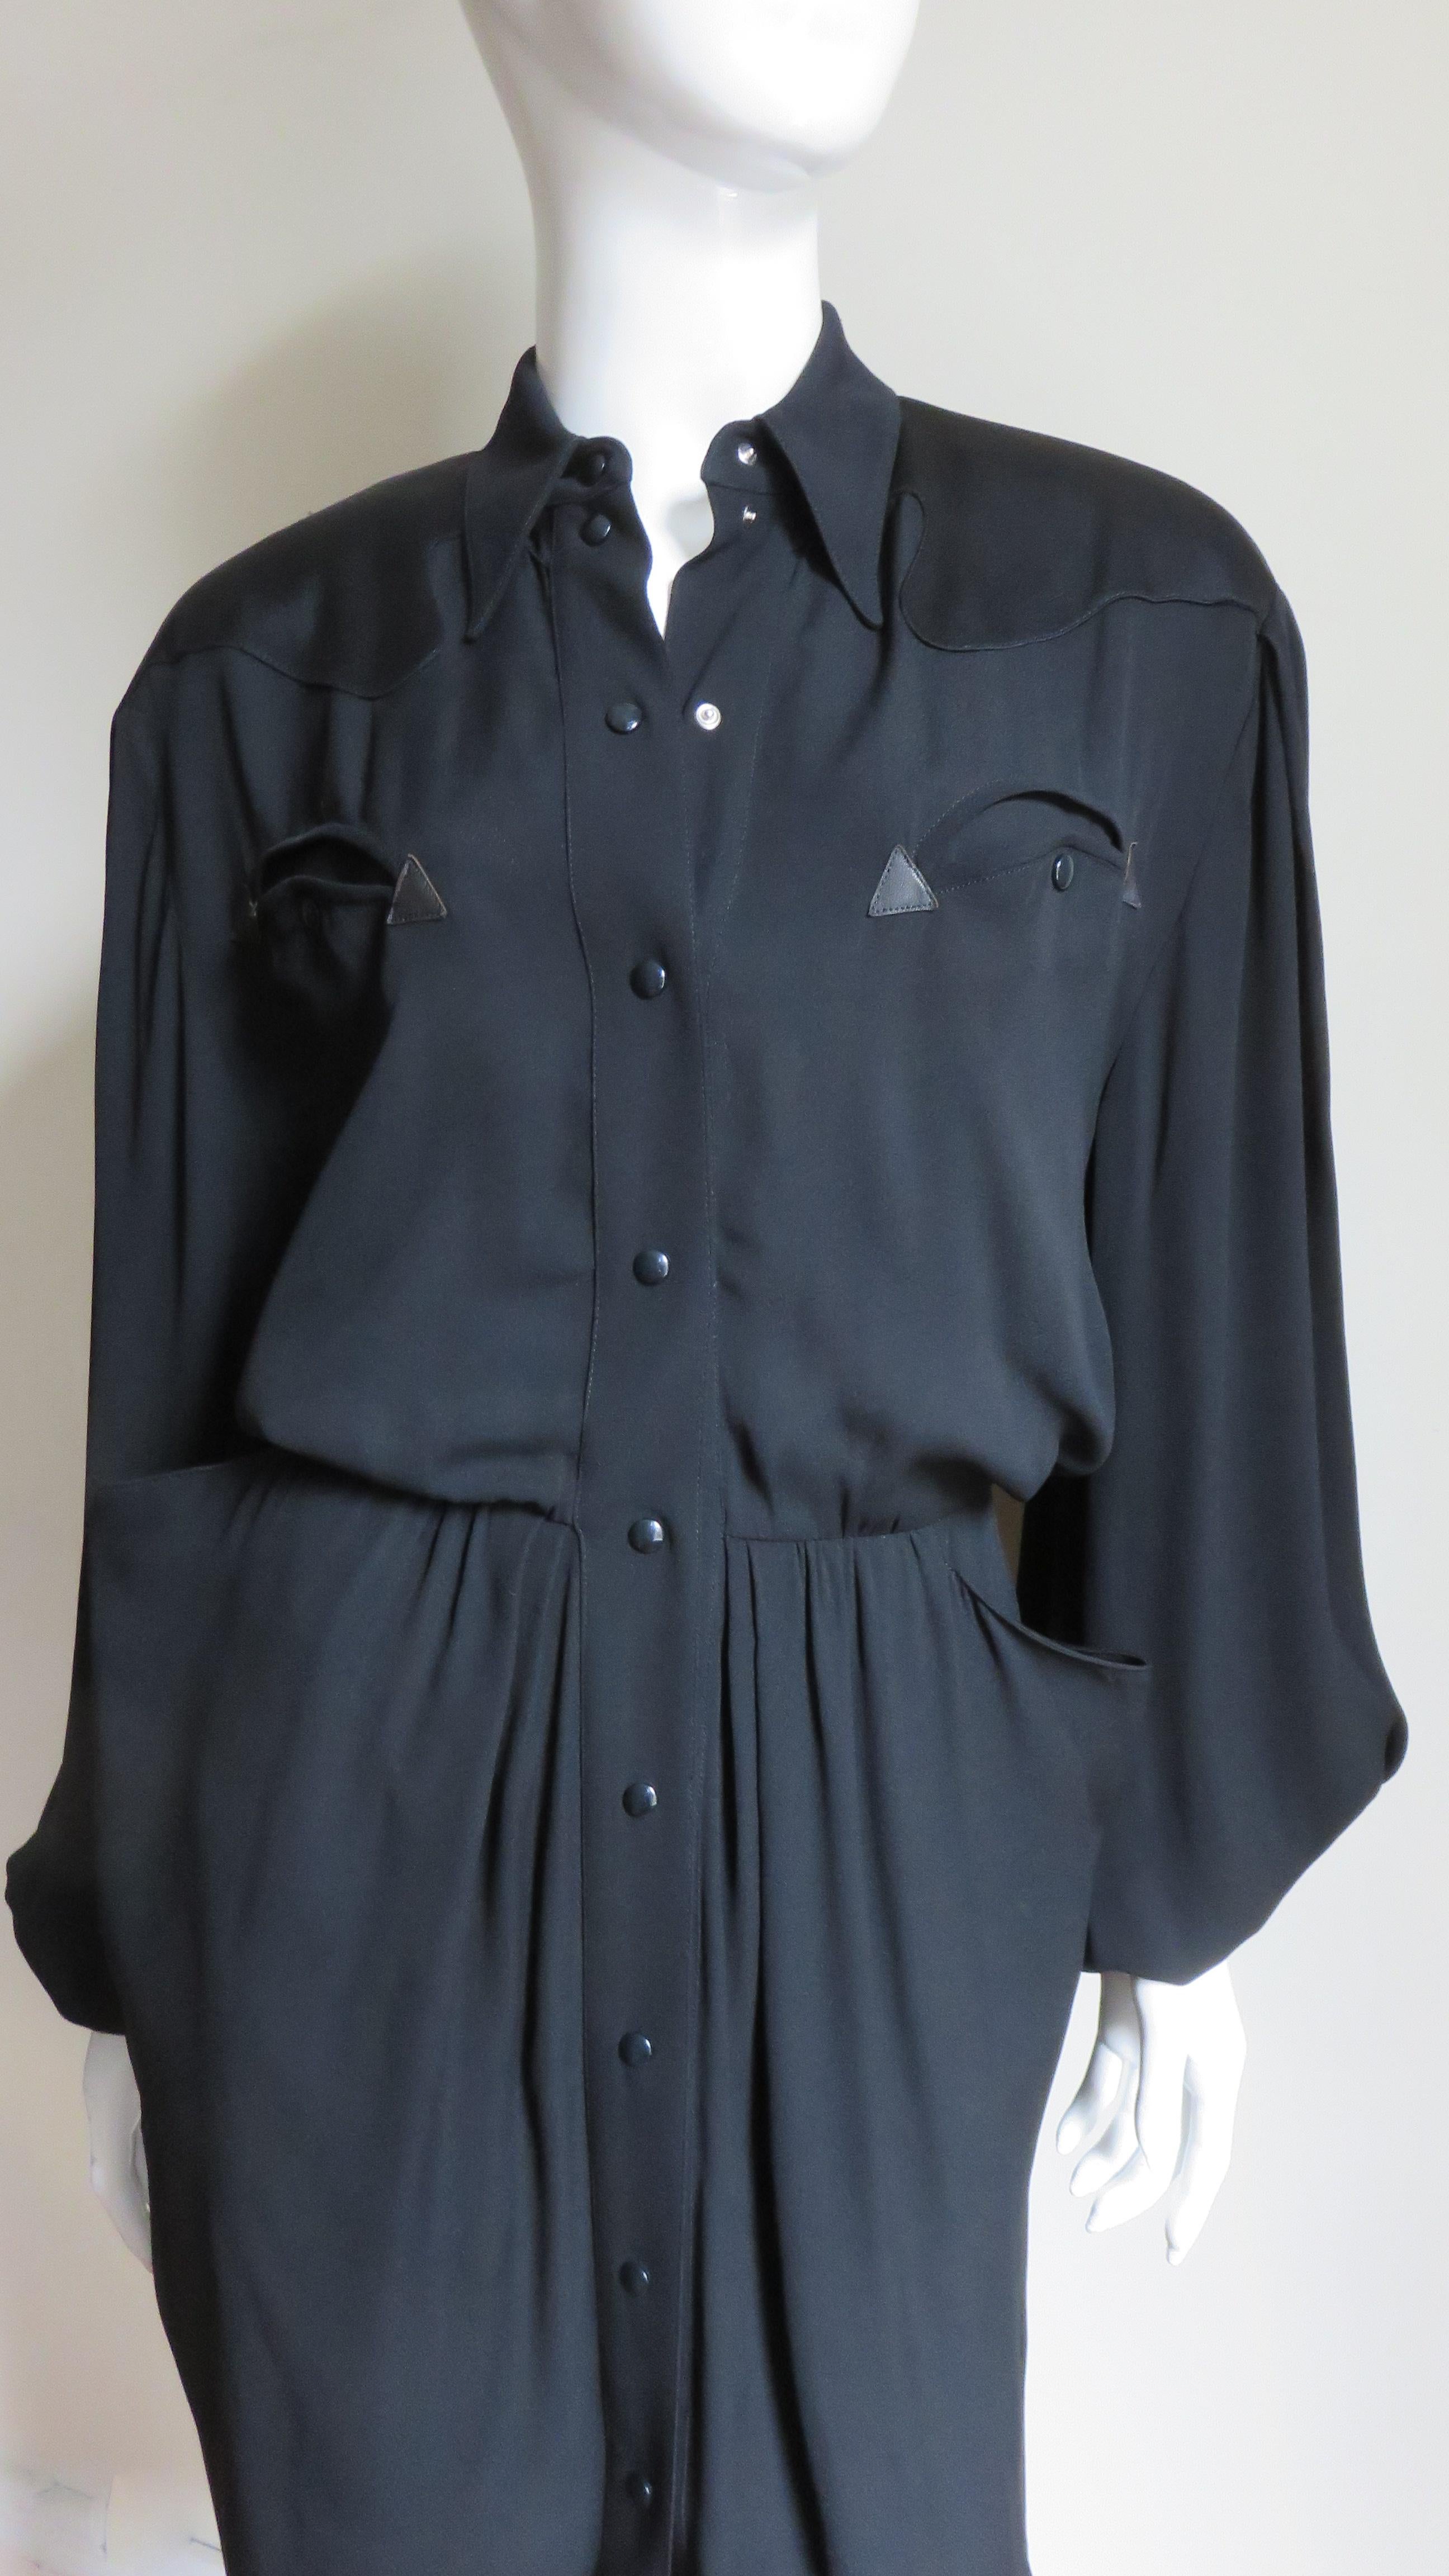 Black Thierry Mugler Western Influence Shirtwaist Dress For Sale